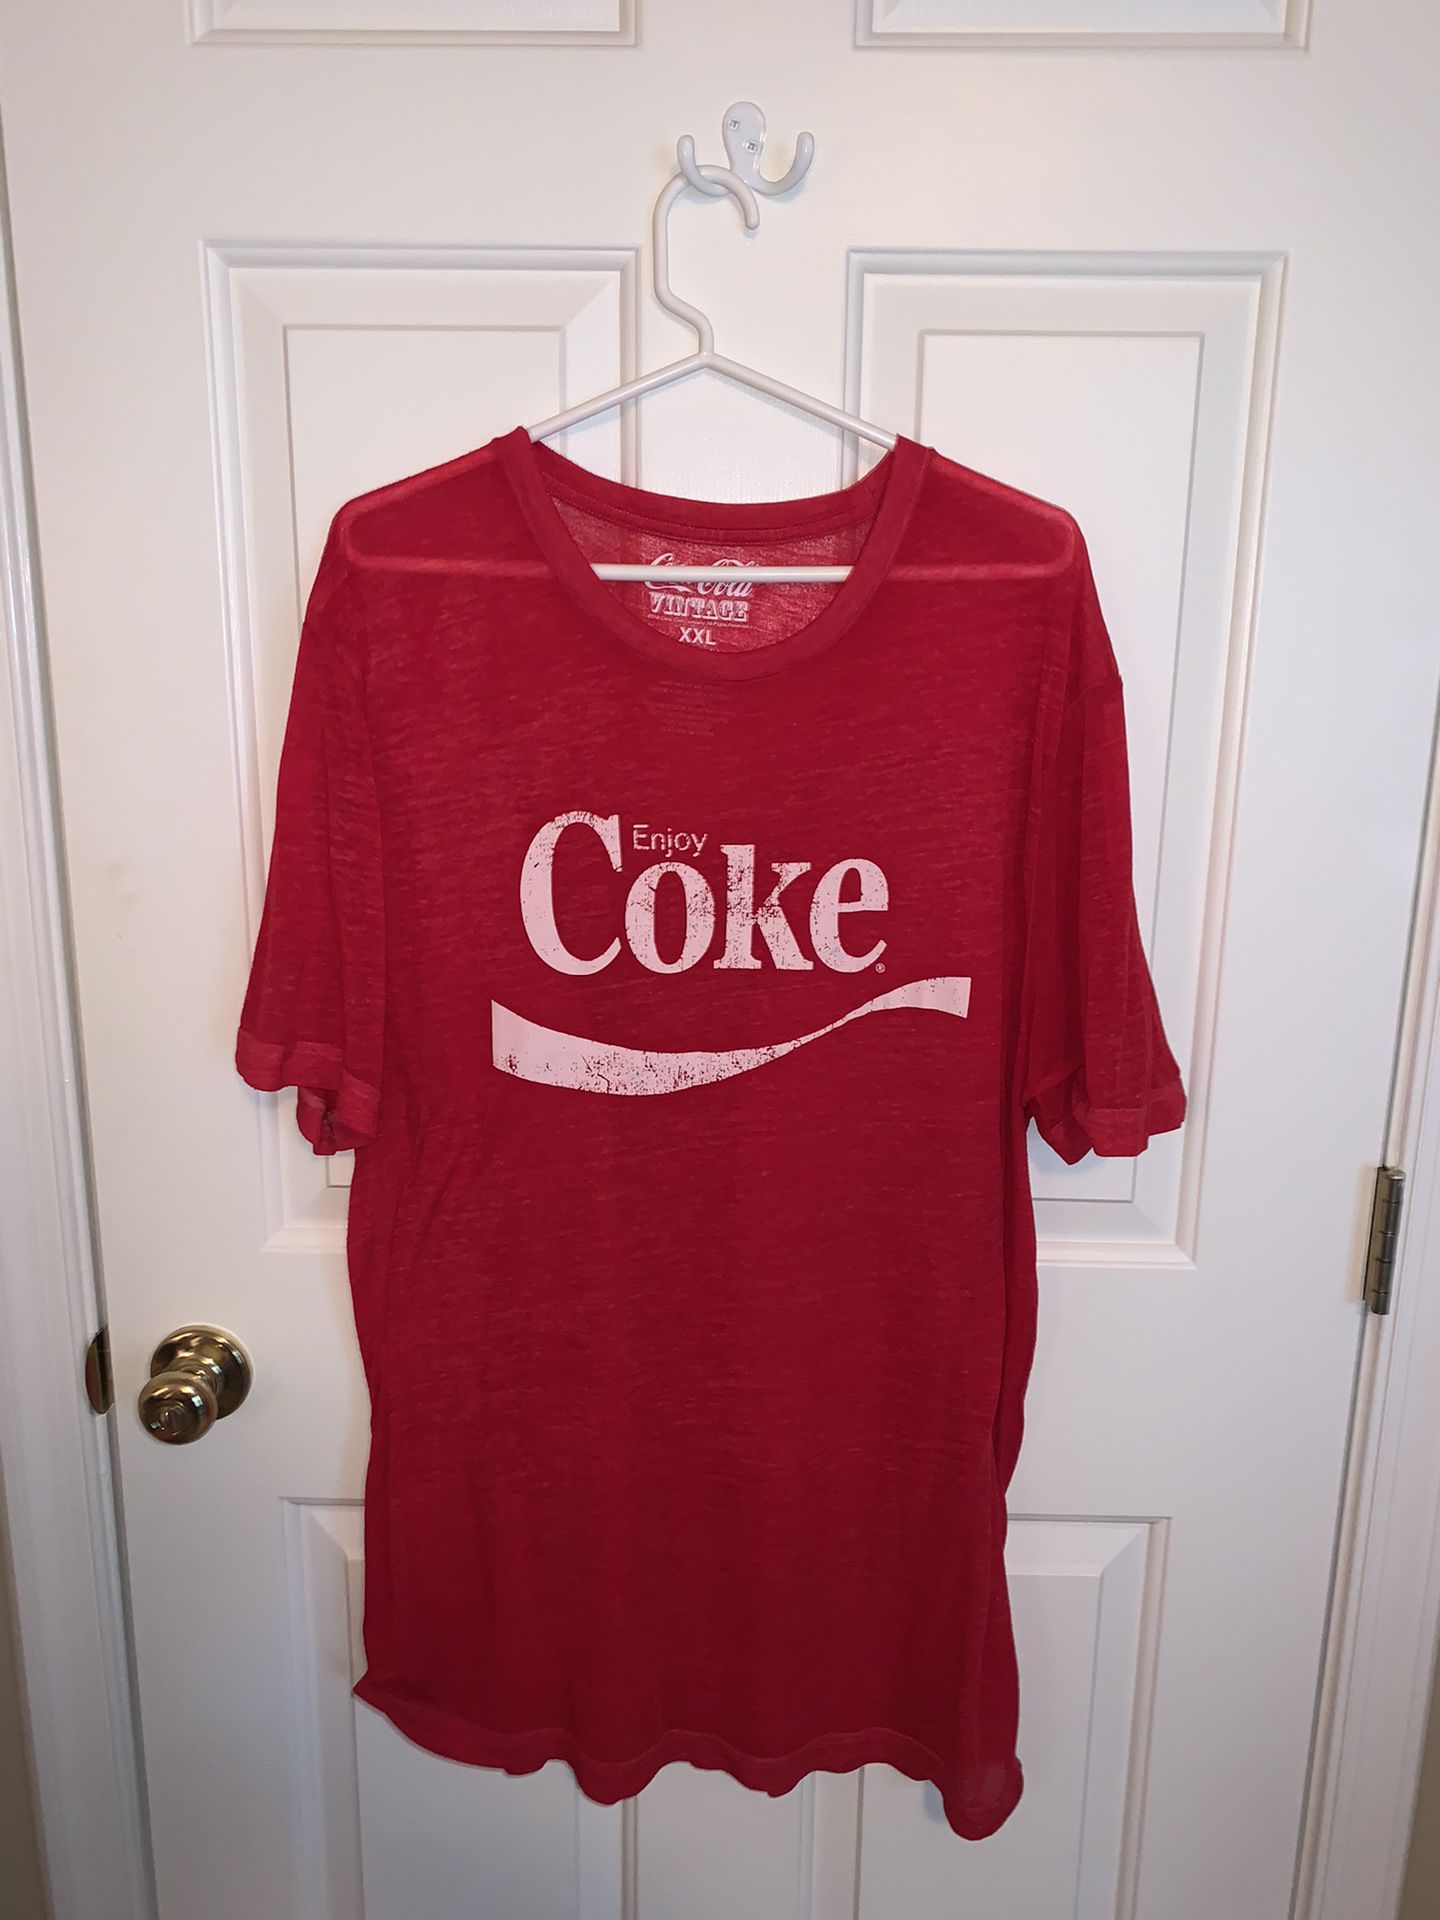 Vintage Coca Cola “Enjoy Coke” T-Shirt - XXL 2XL